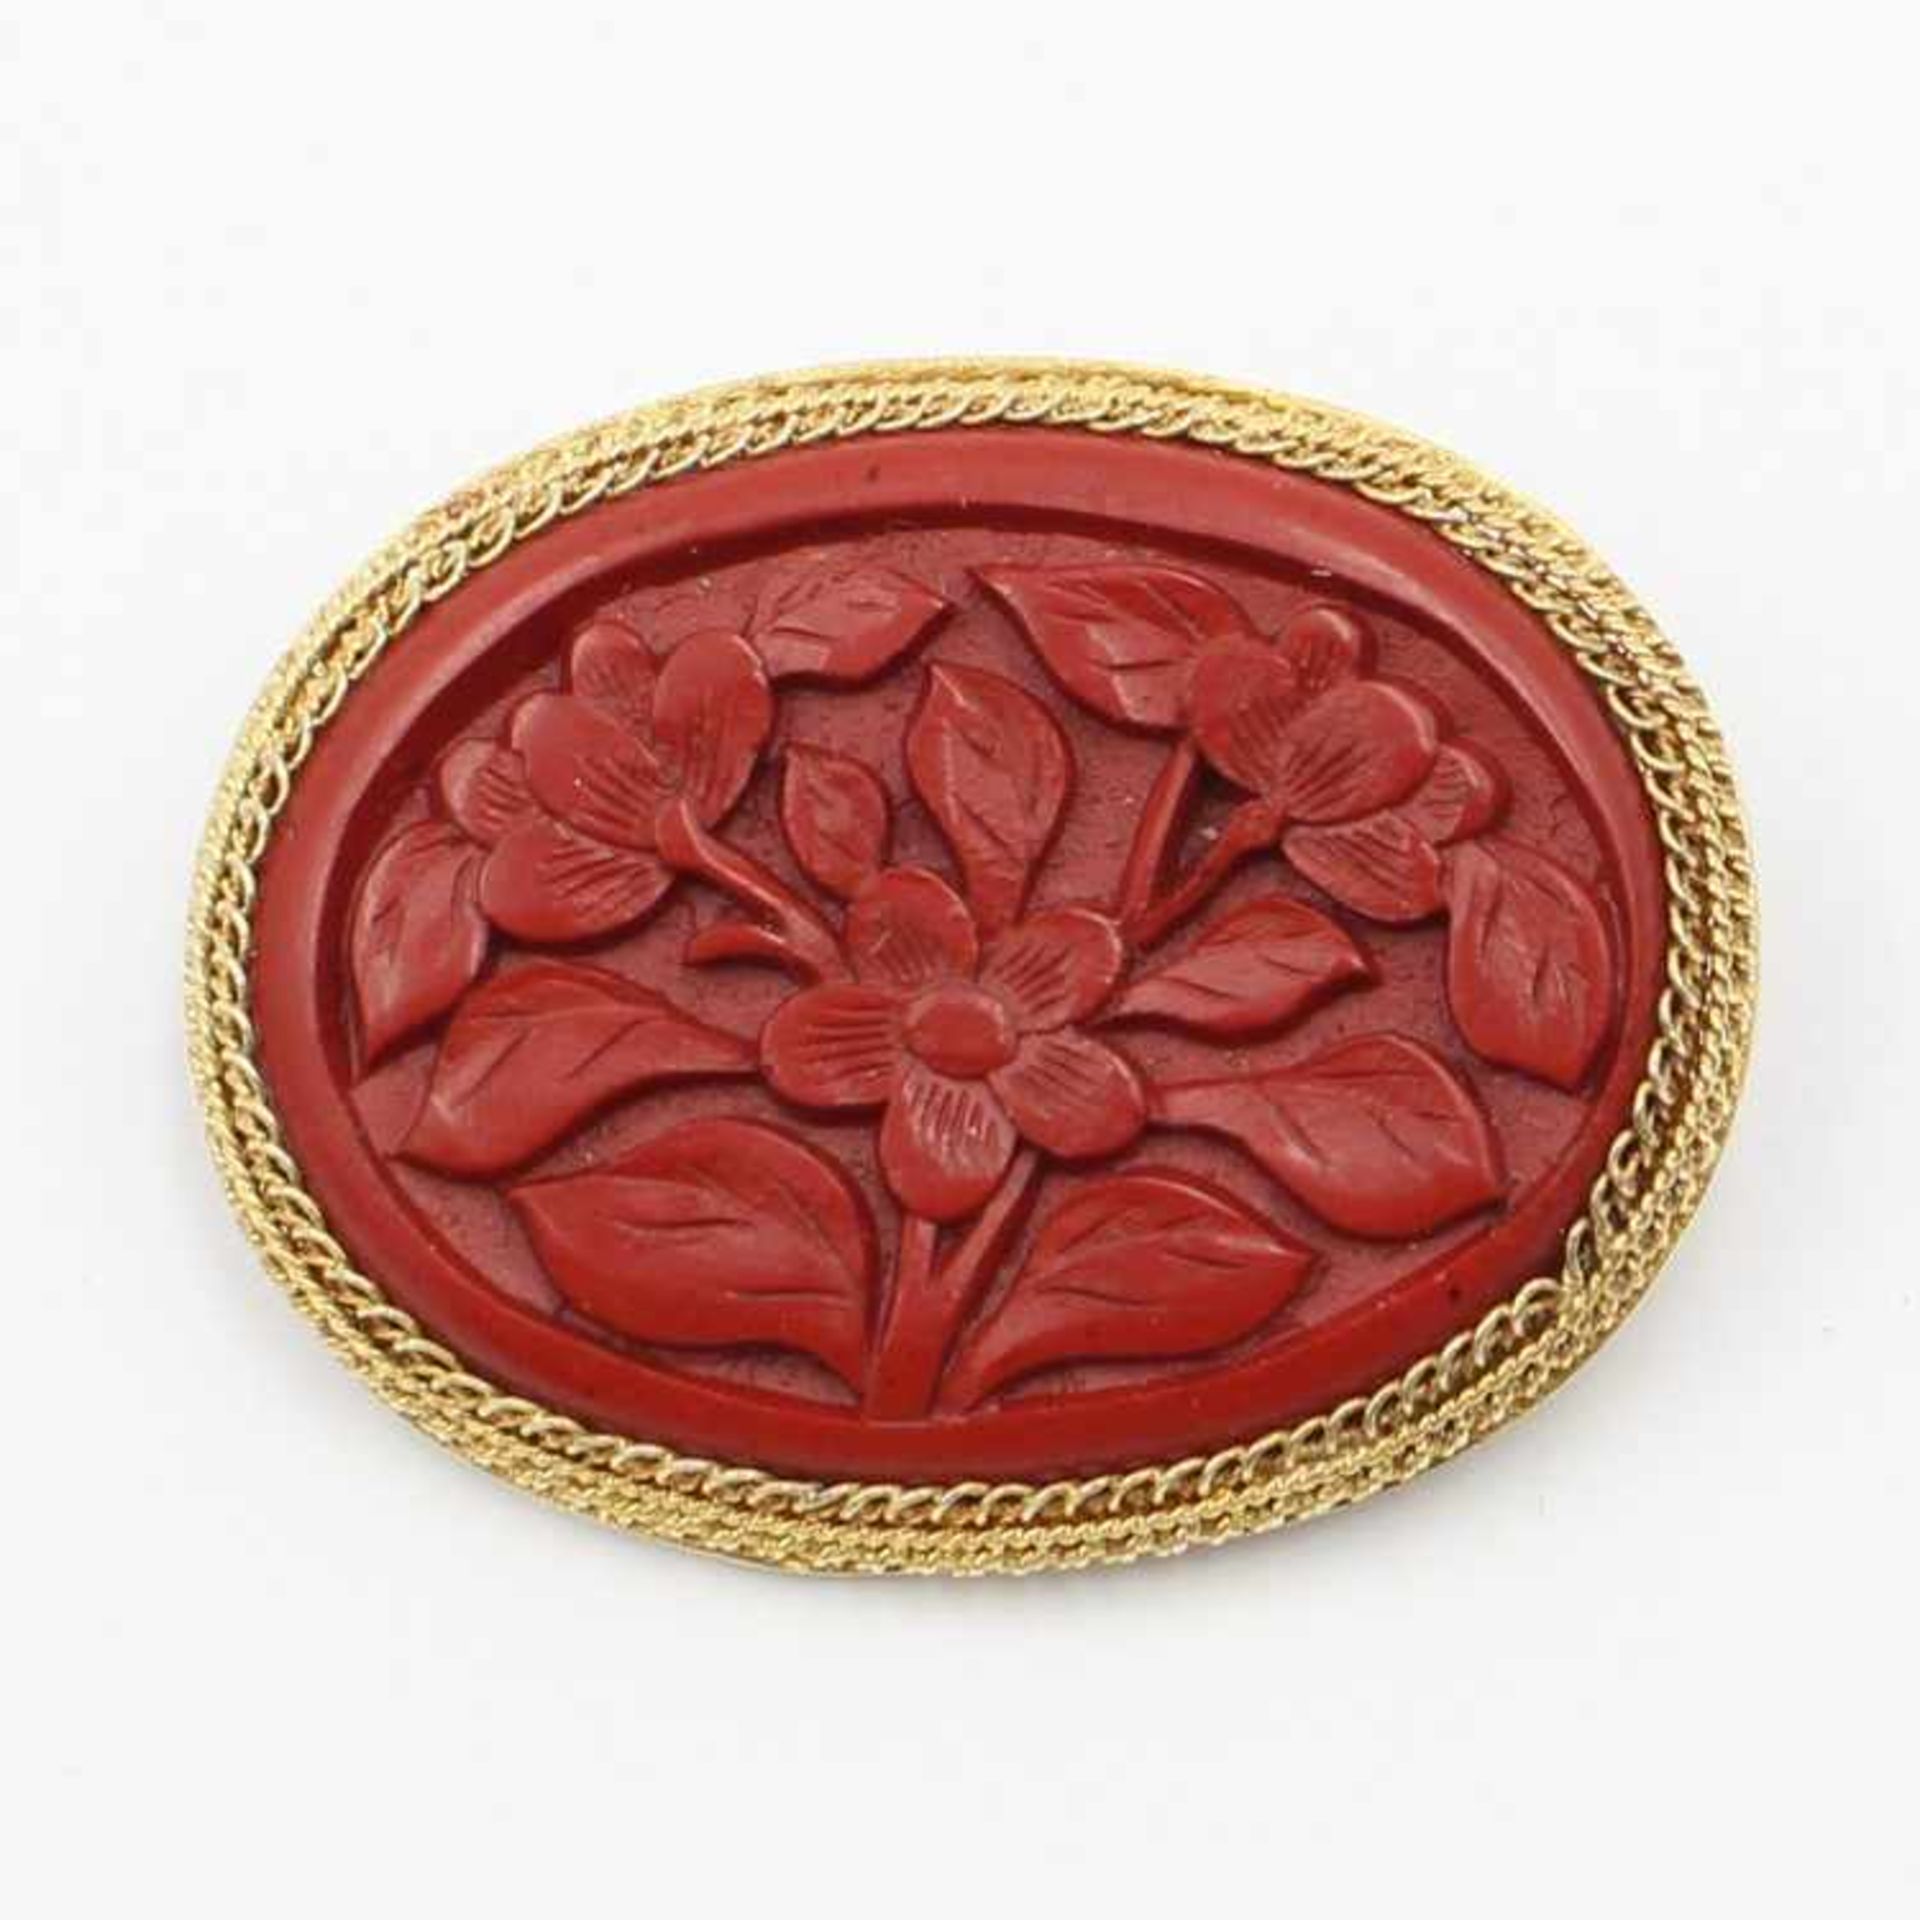 BroscheSi vergold., oval, mittig besetzt mit rotem Plättchen, dieses mit reliefiertem Blütendekor, - Bild 2 aus 2